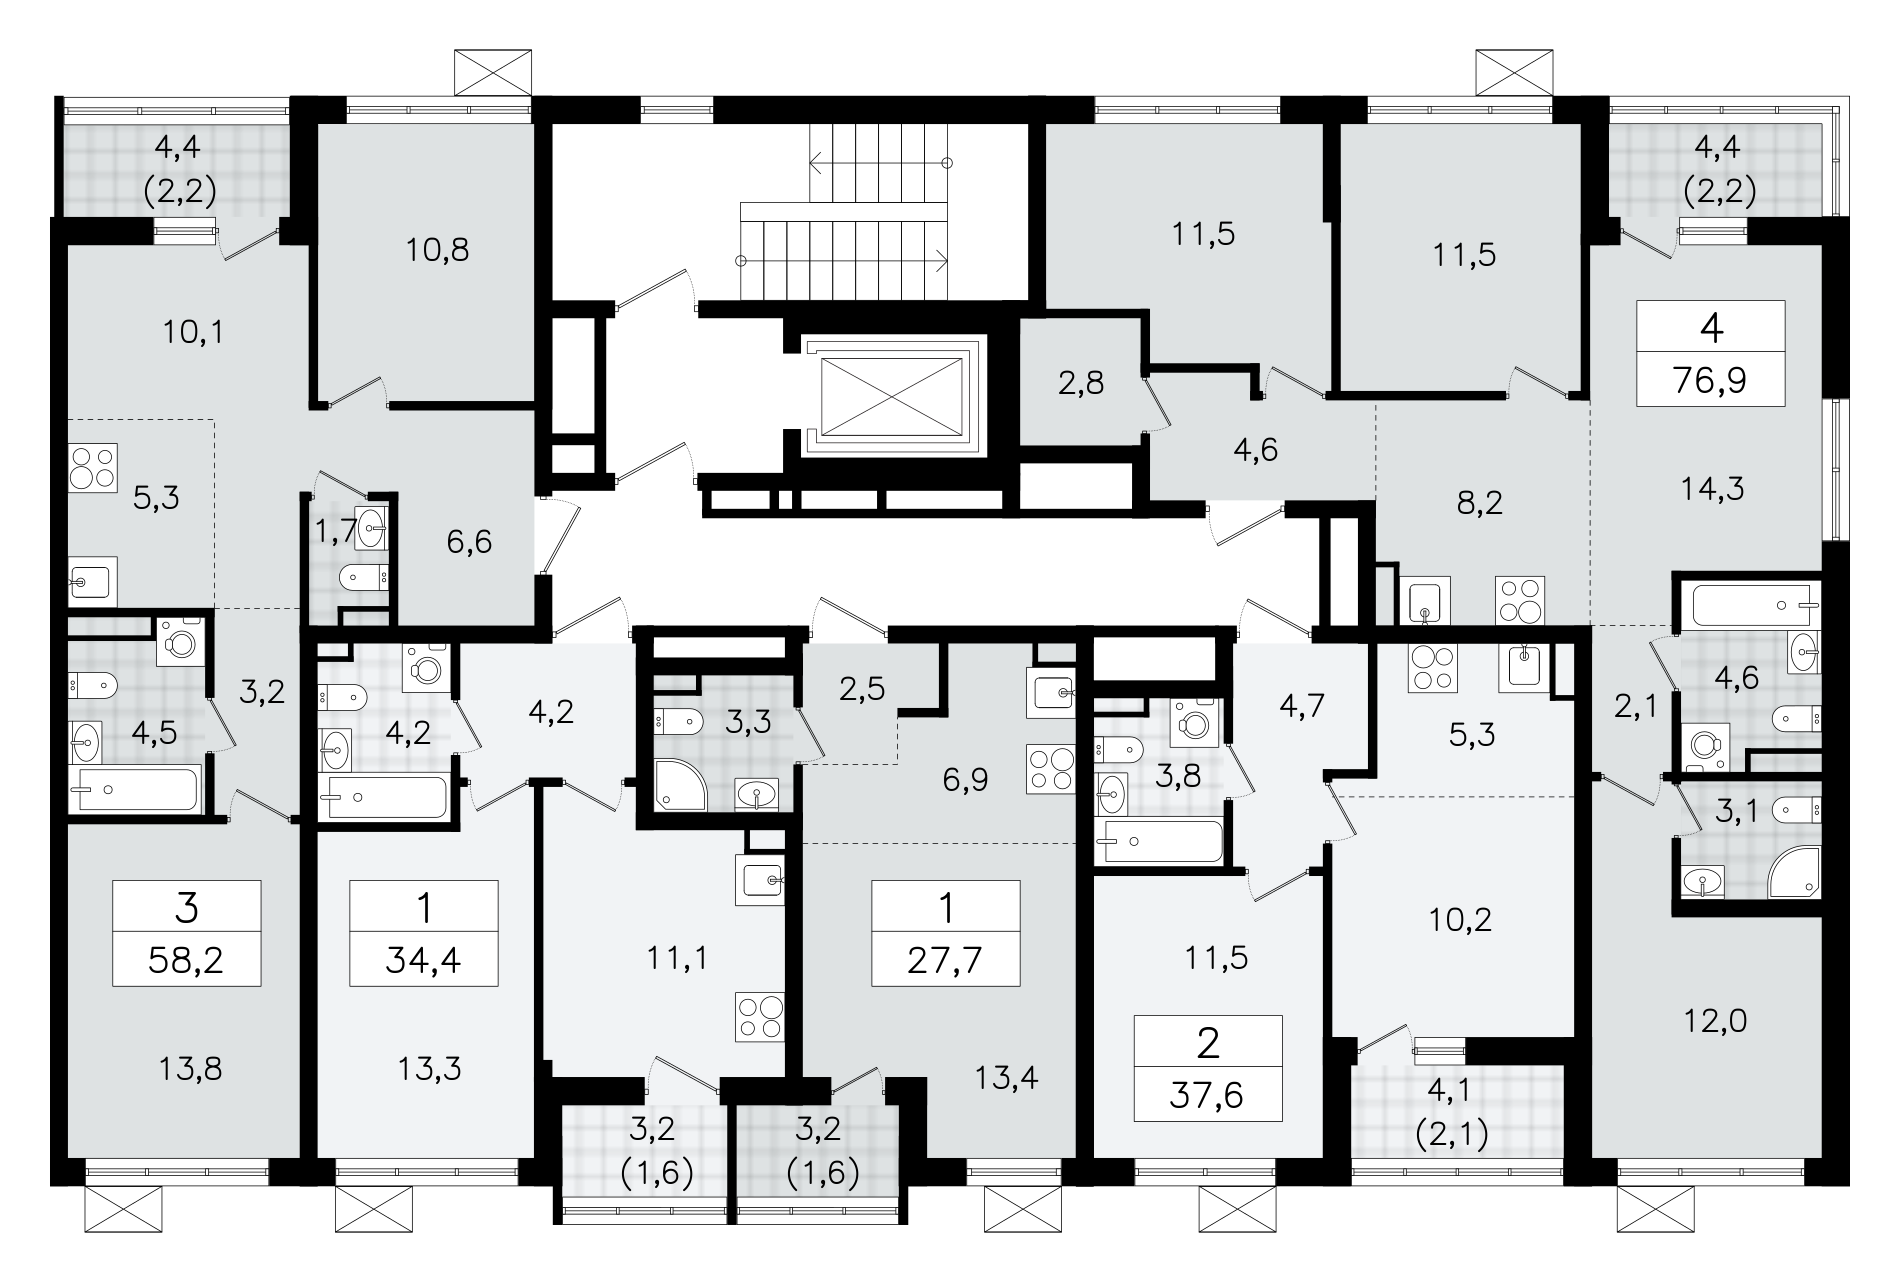 2-комнатная (Евро) квартира, 37.6 м² в ЖК "А101 Всеволожск" - планировка этажа